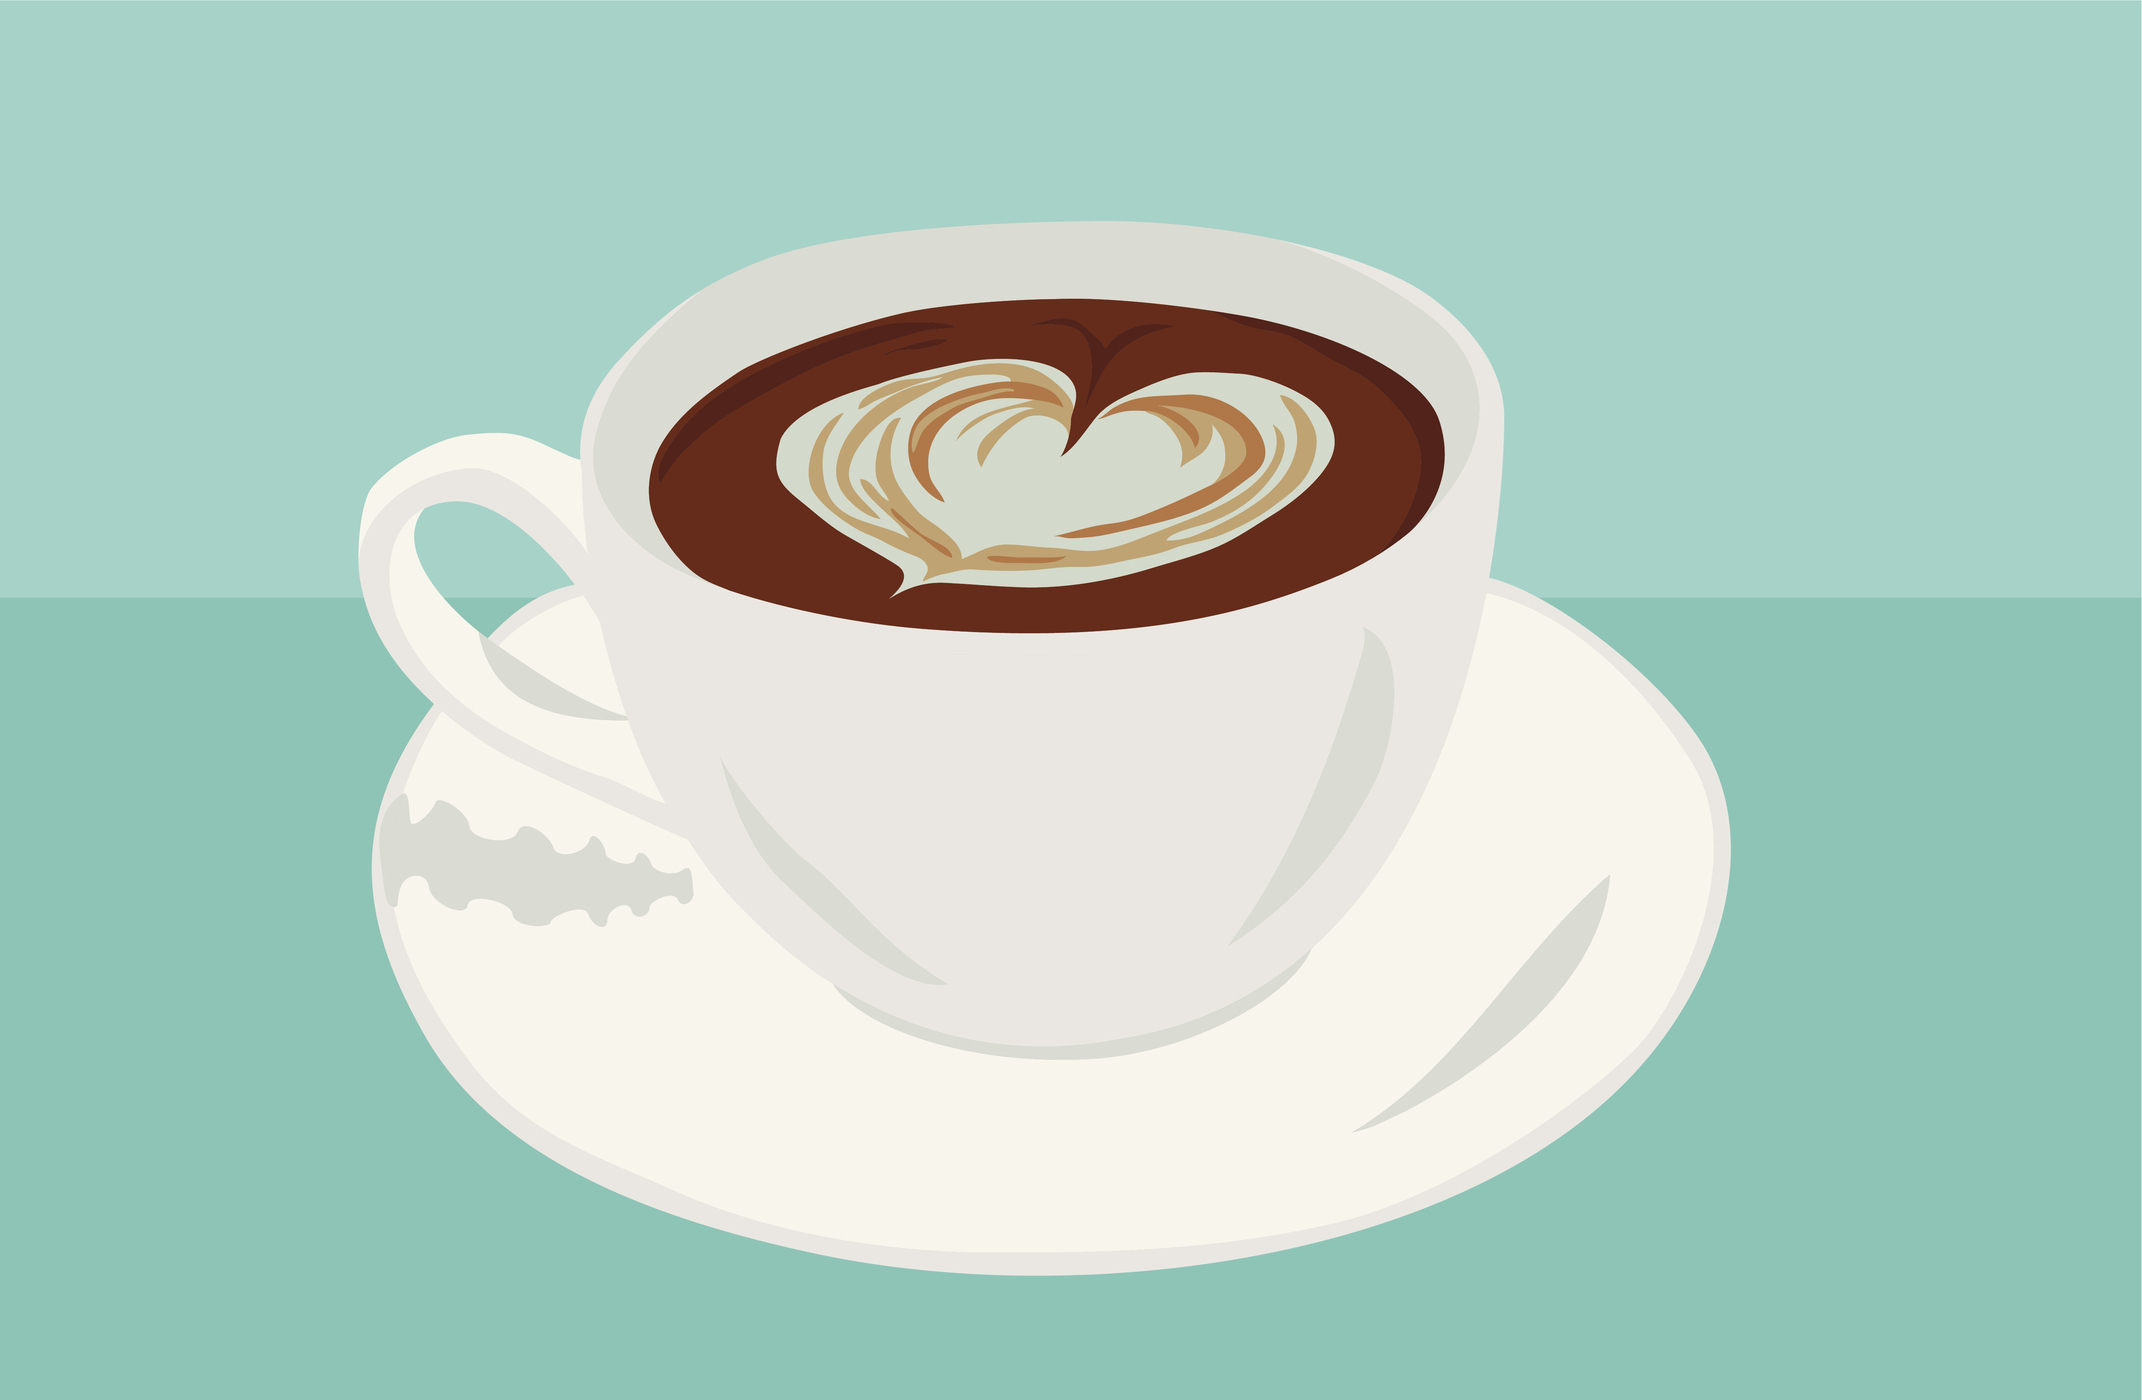 heart shape in coffee illustration